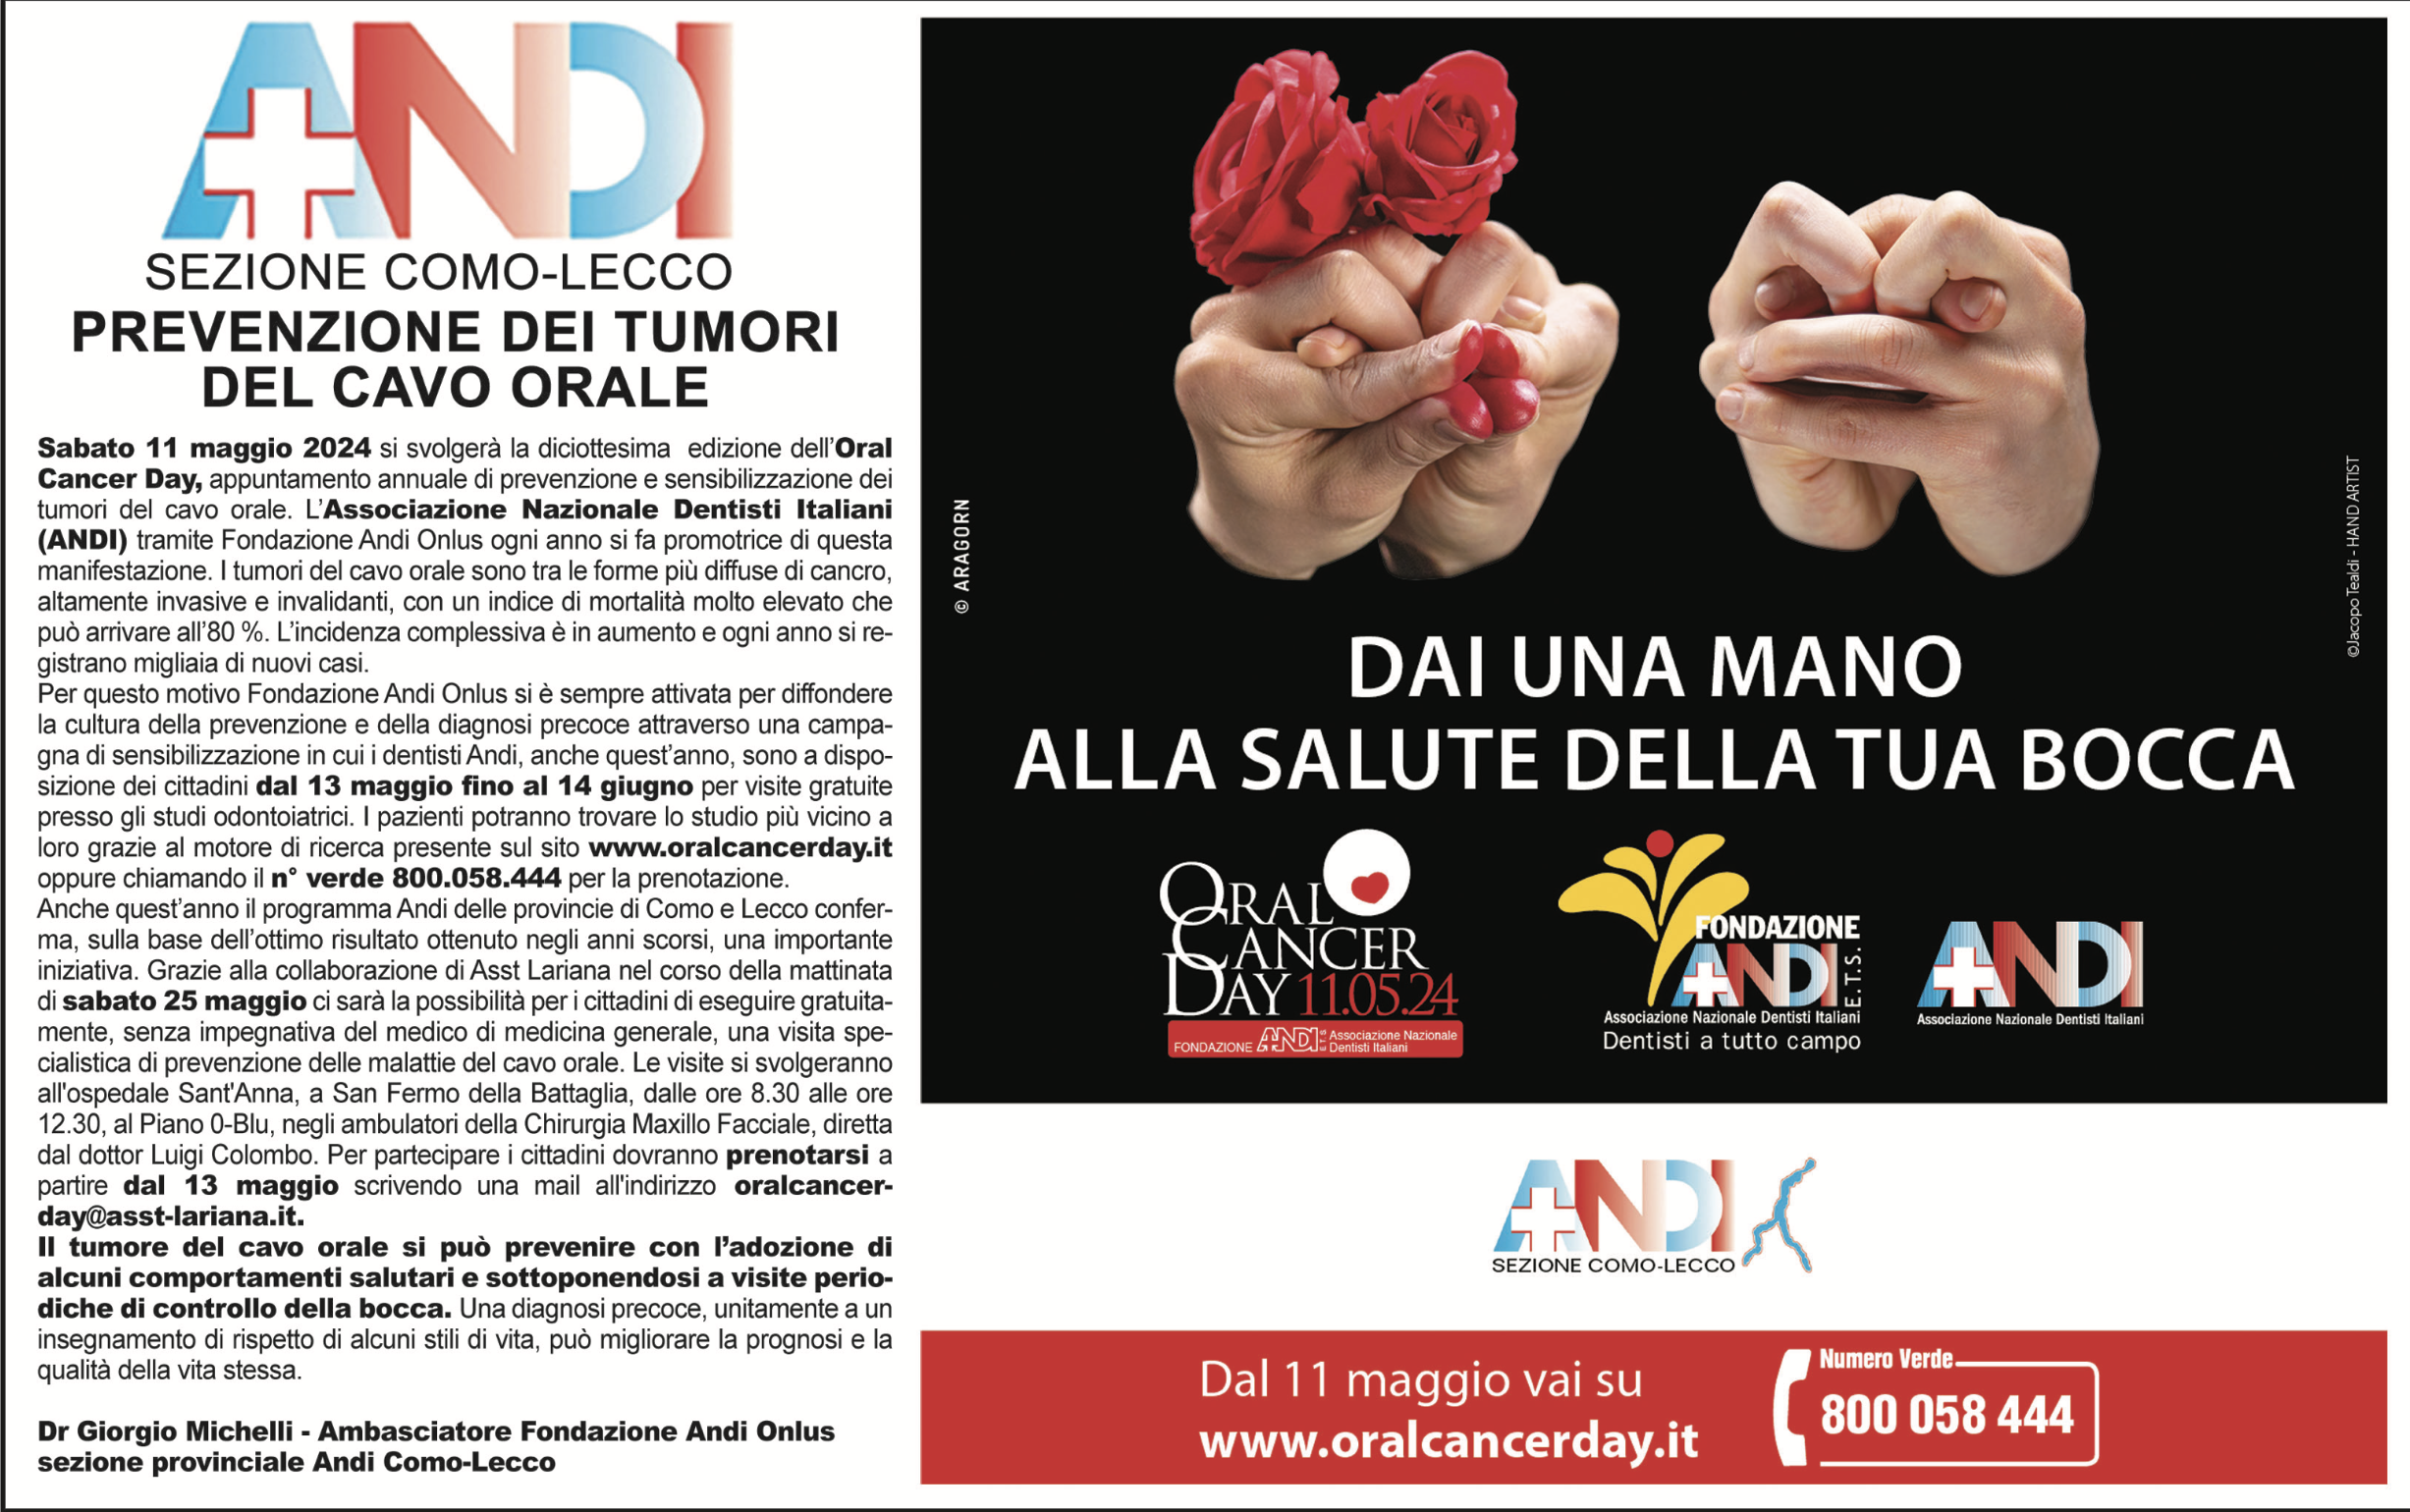 ANDI Como-Lecco promuove Oral Cancer Day 24